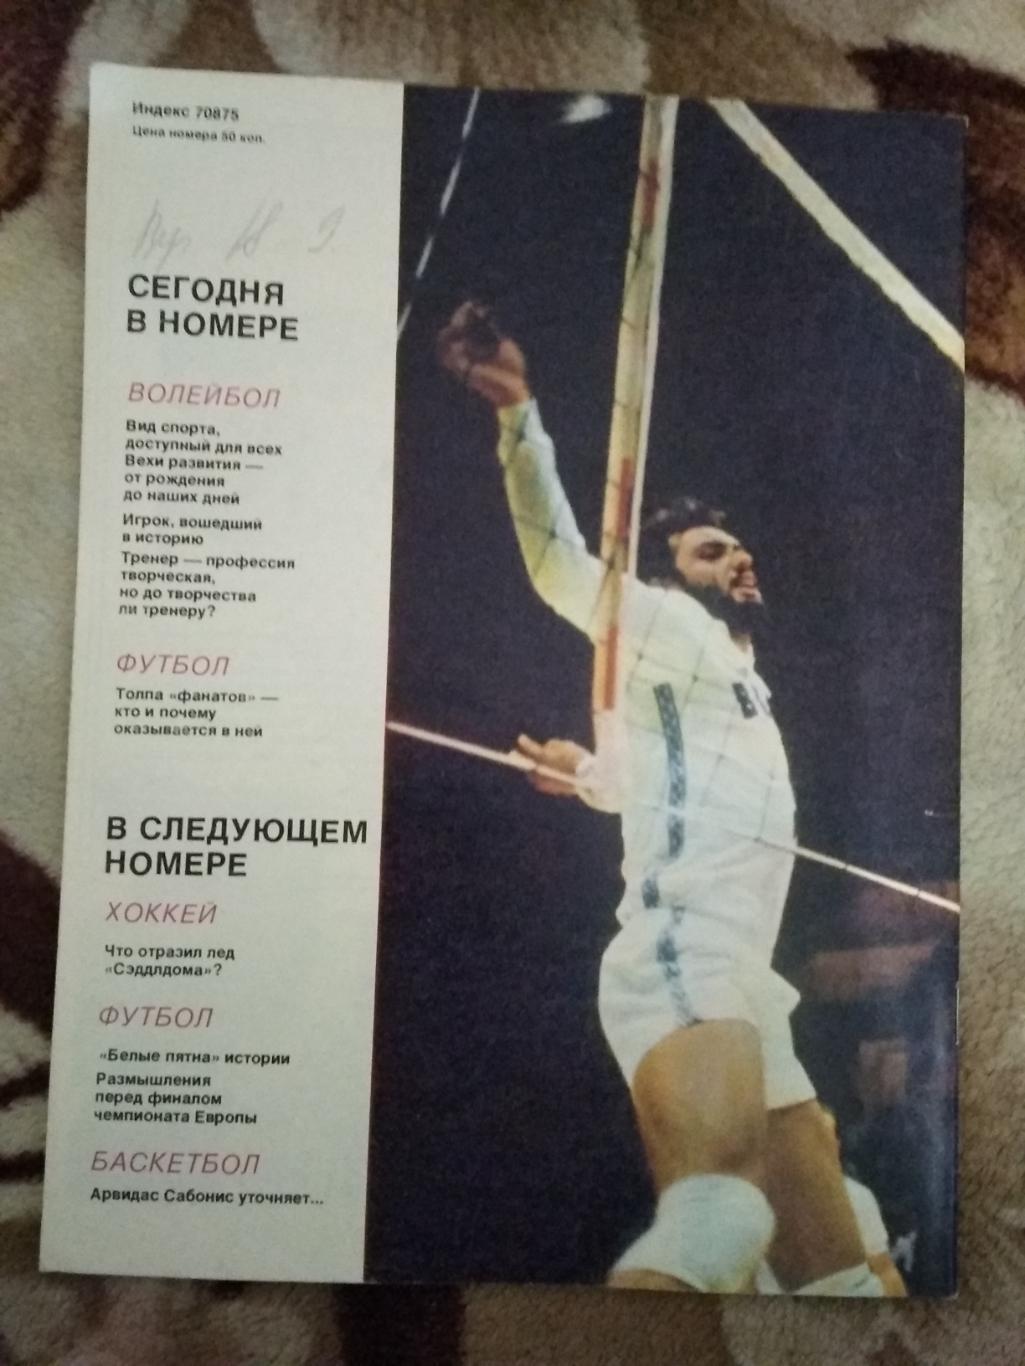 Журнал.Спортивные игры № 5 1988 г. 1